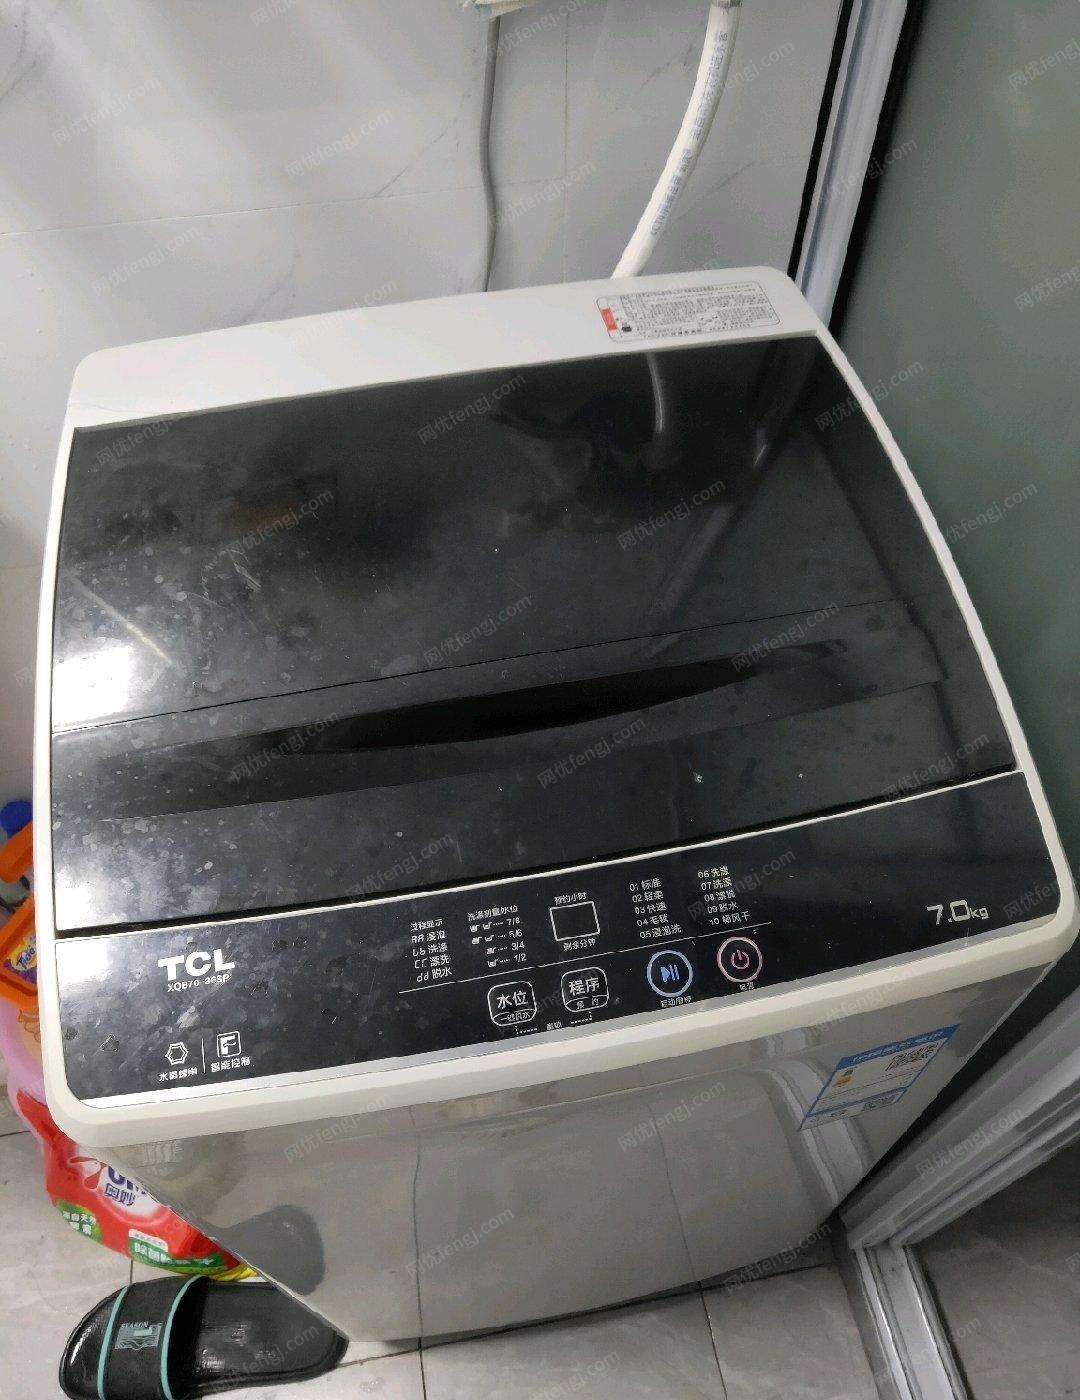 上海宝山区洗衣机冰箱低价出售